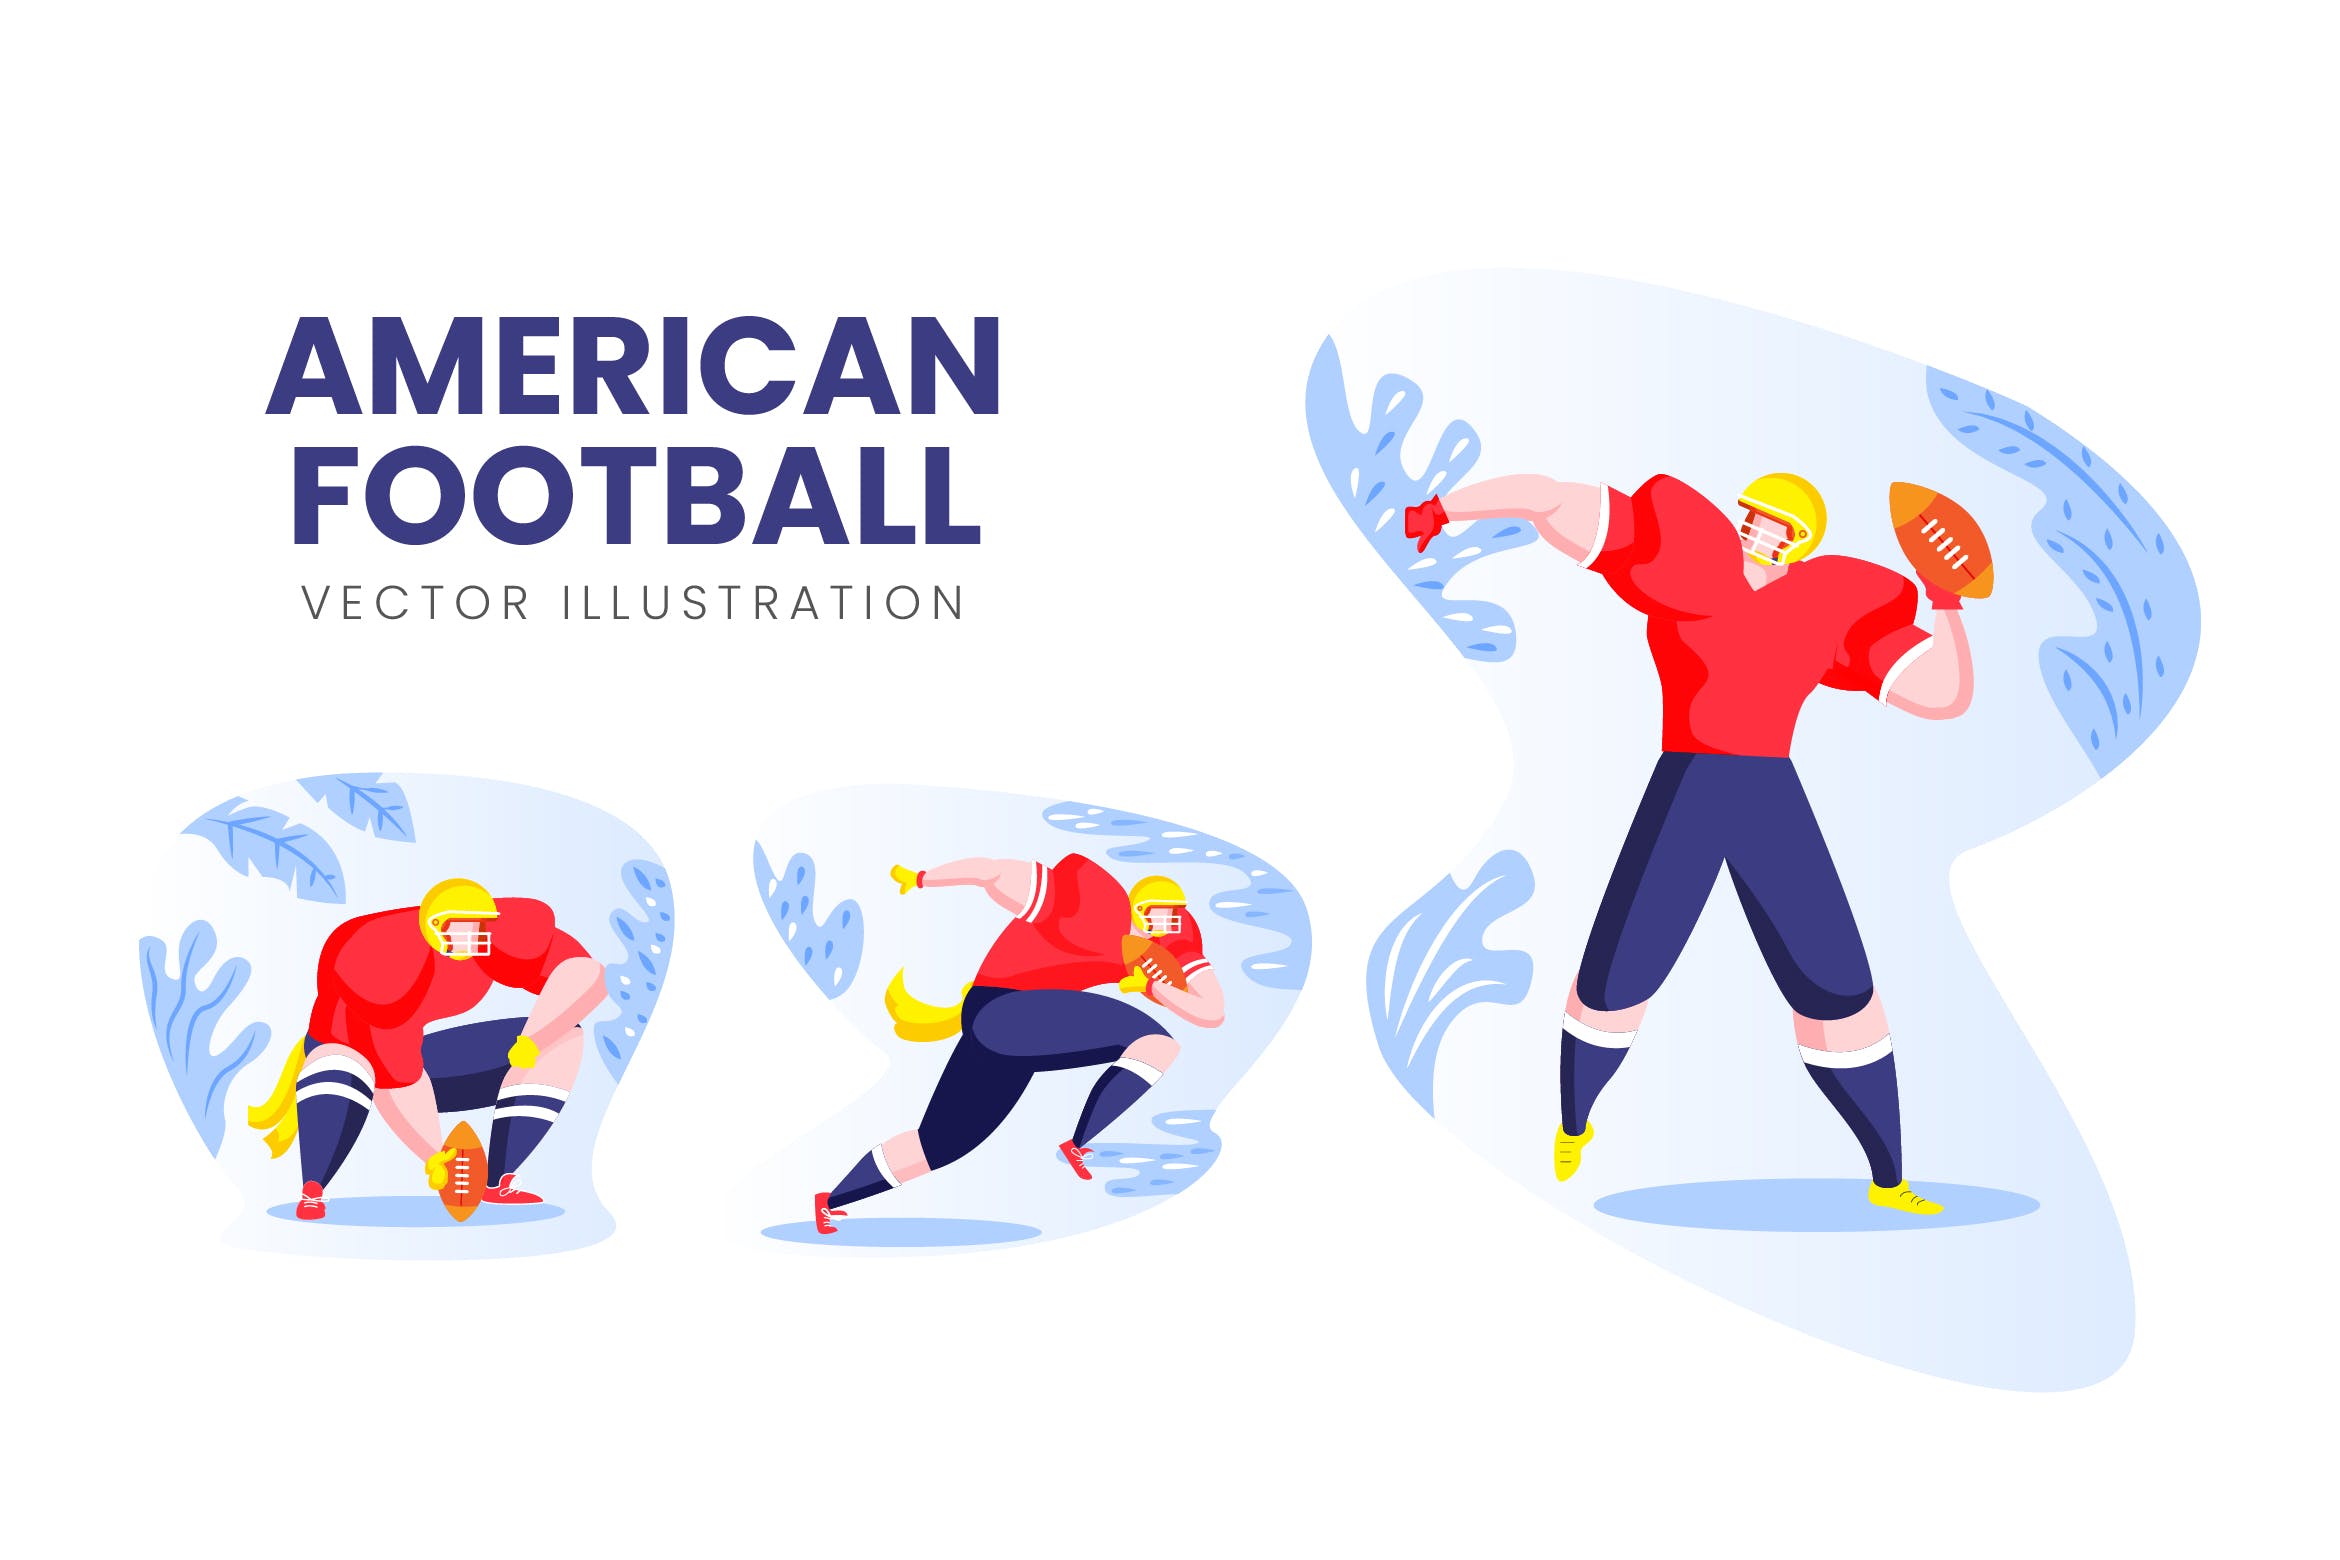 美式足球运动员人物形象16图库精选手绘插画矢量素材 American Football Vector Character Set插图